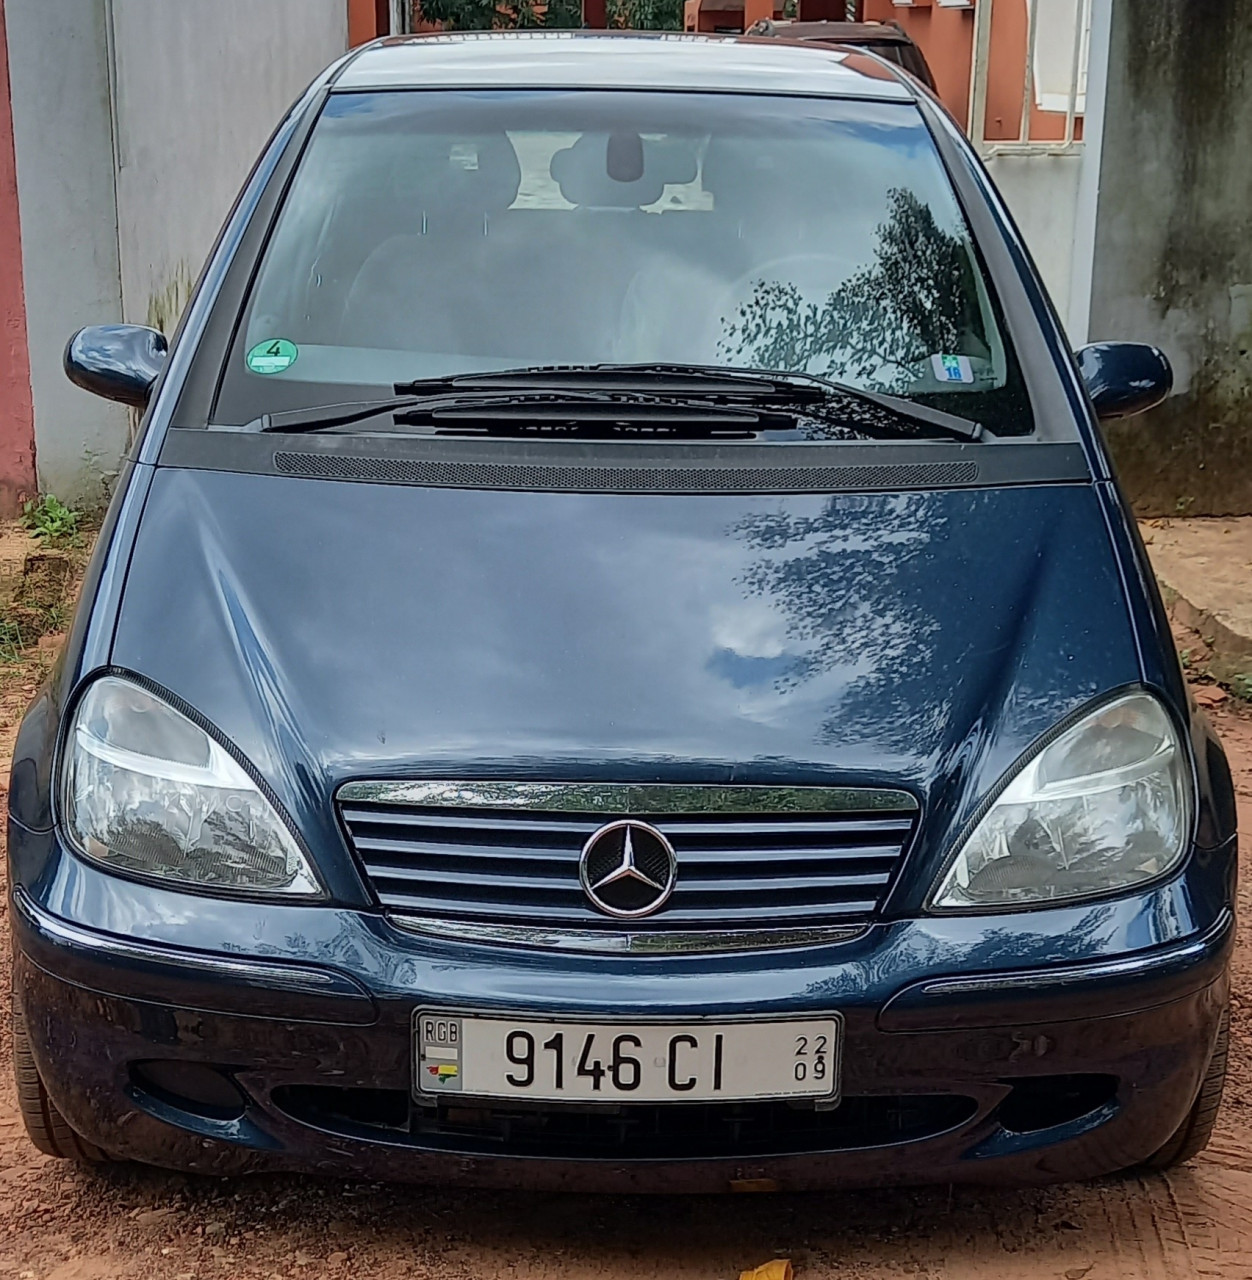 Mercedes-Benz A-Class, Carros, Bissau